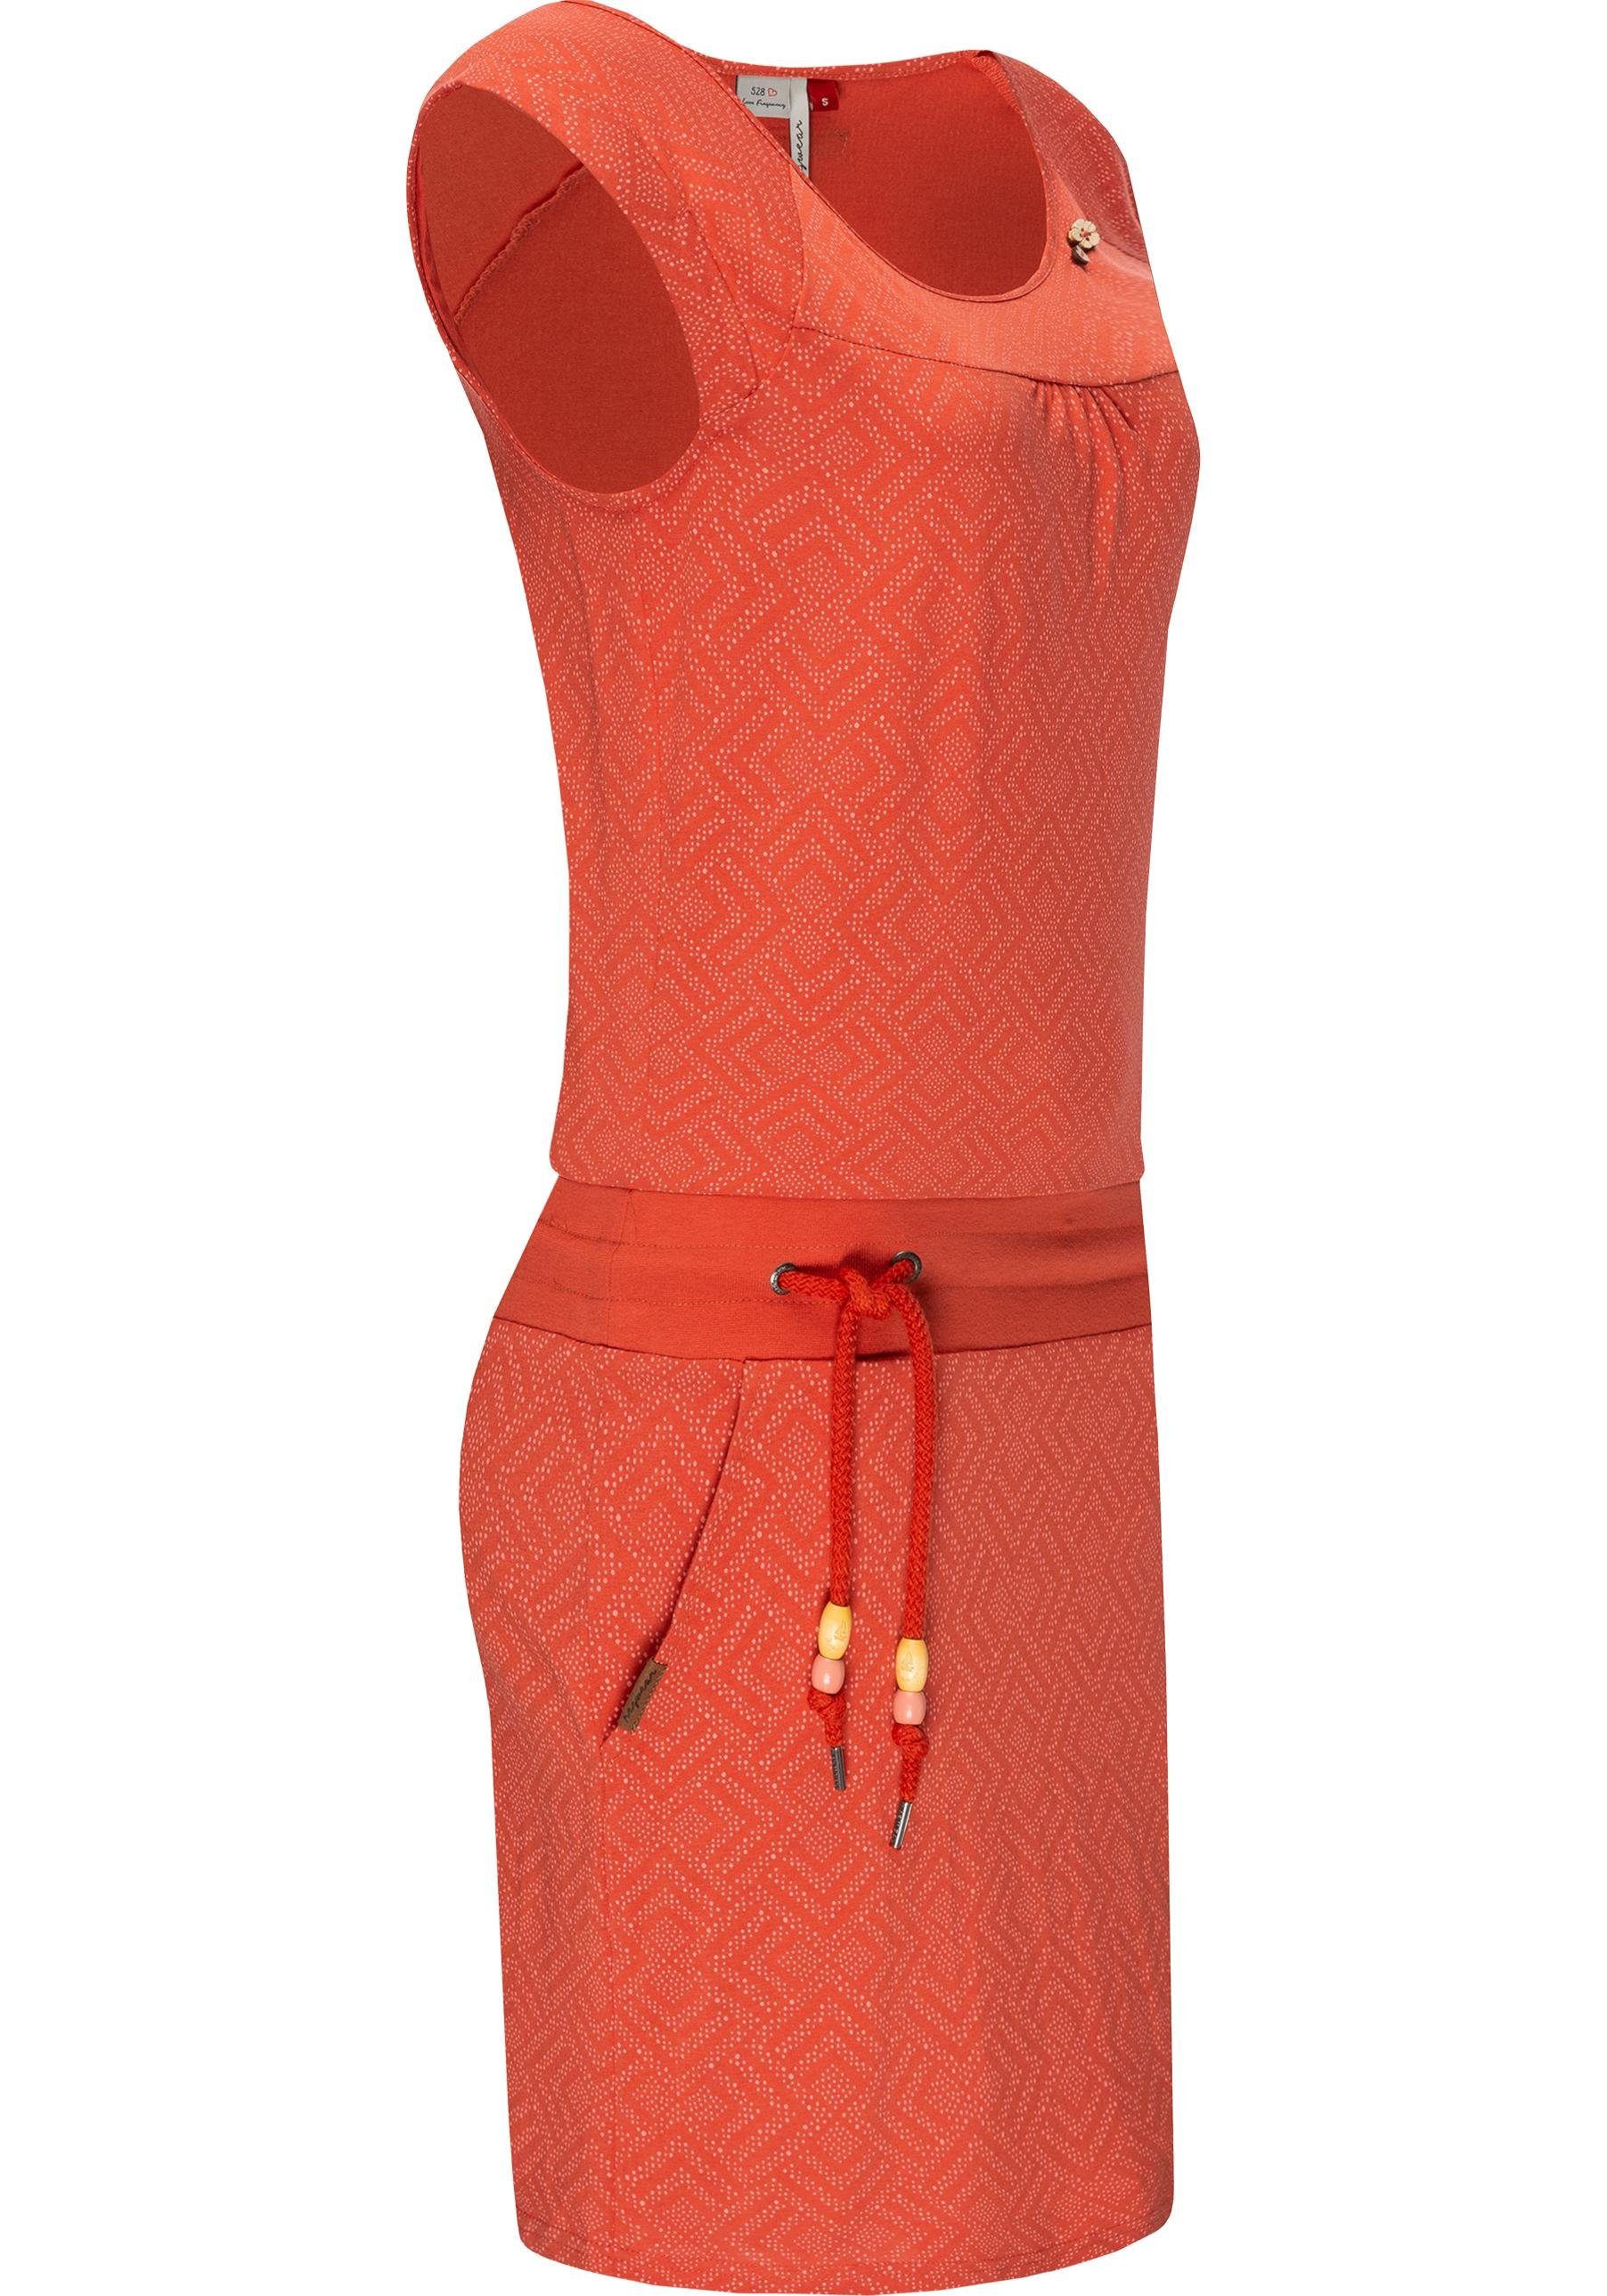 Ragwear Sommerkleid Penelope Print leichtes ziegelrot Baumwoll Kleid mit